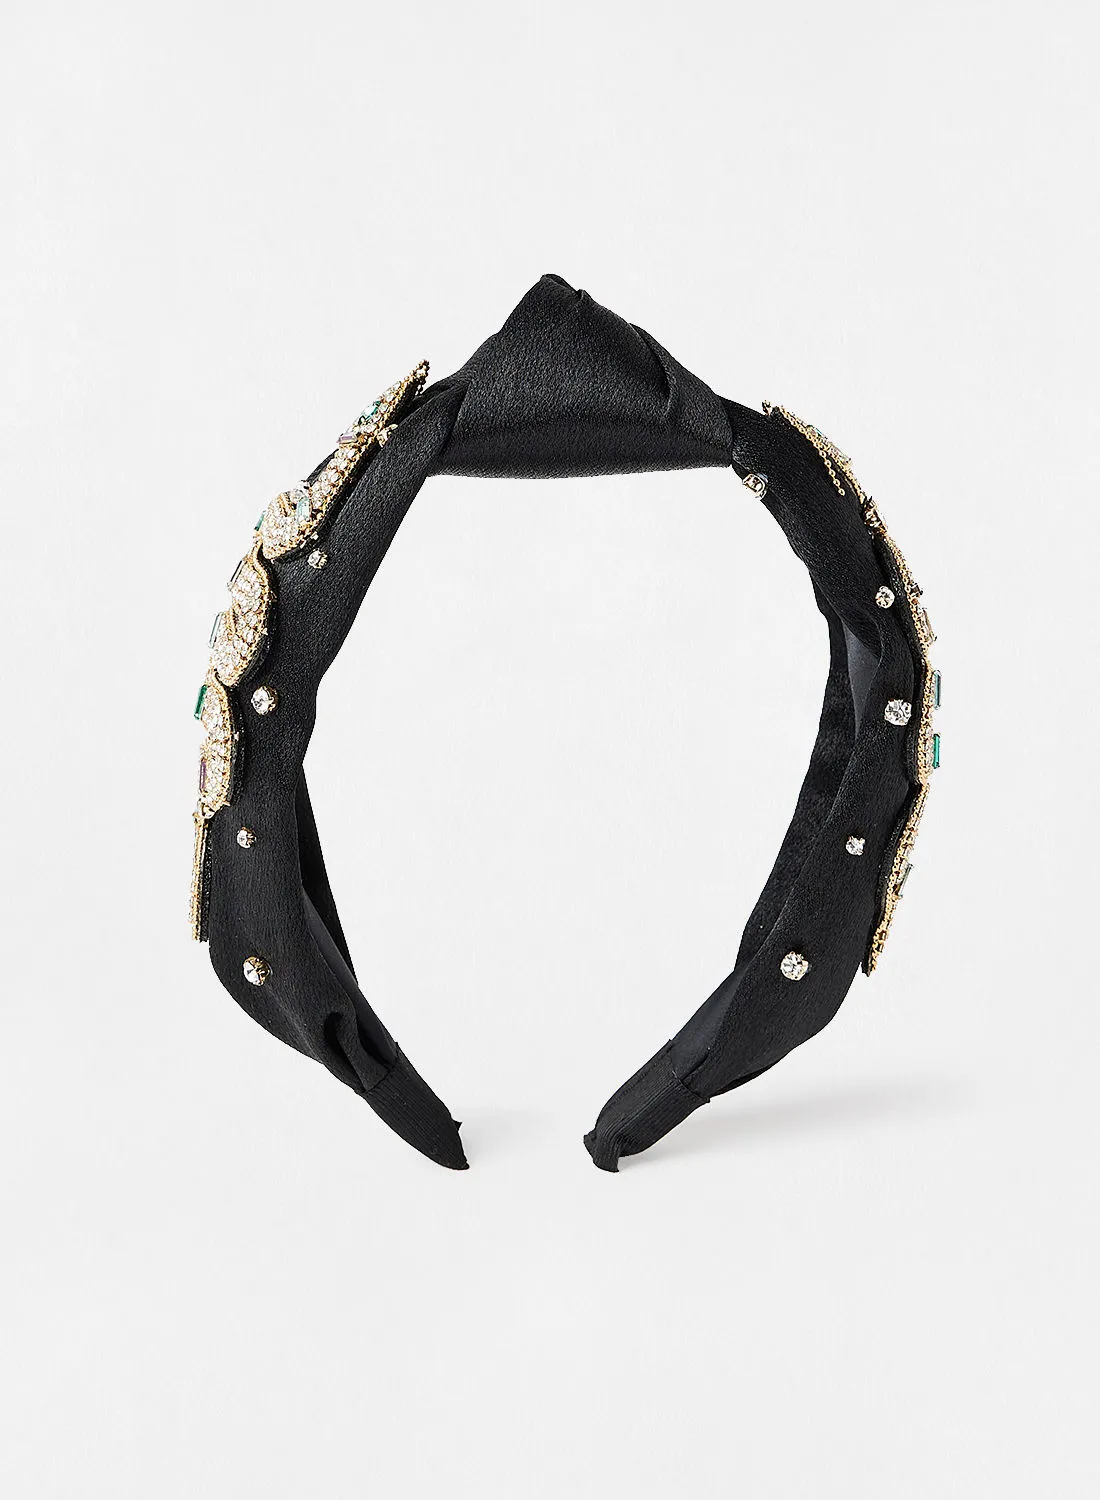 ALDO Keston Embellished Headband Black